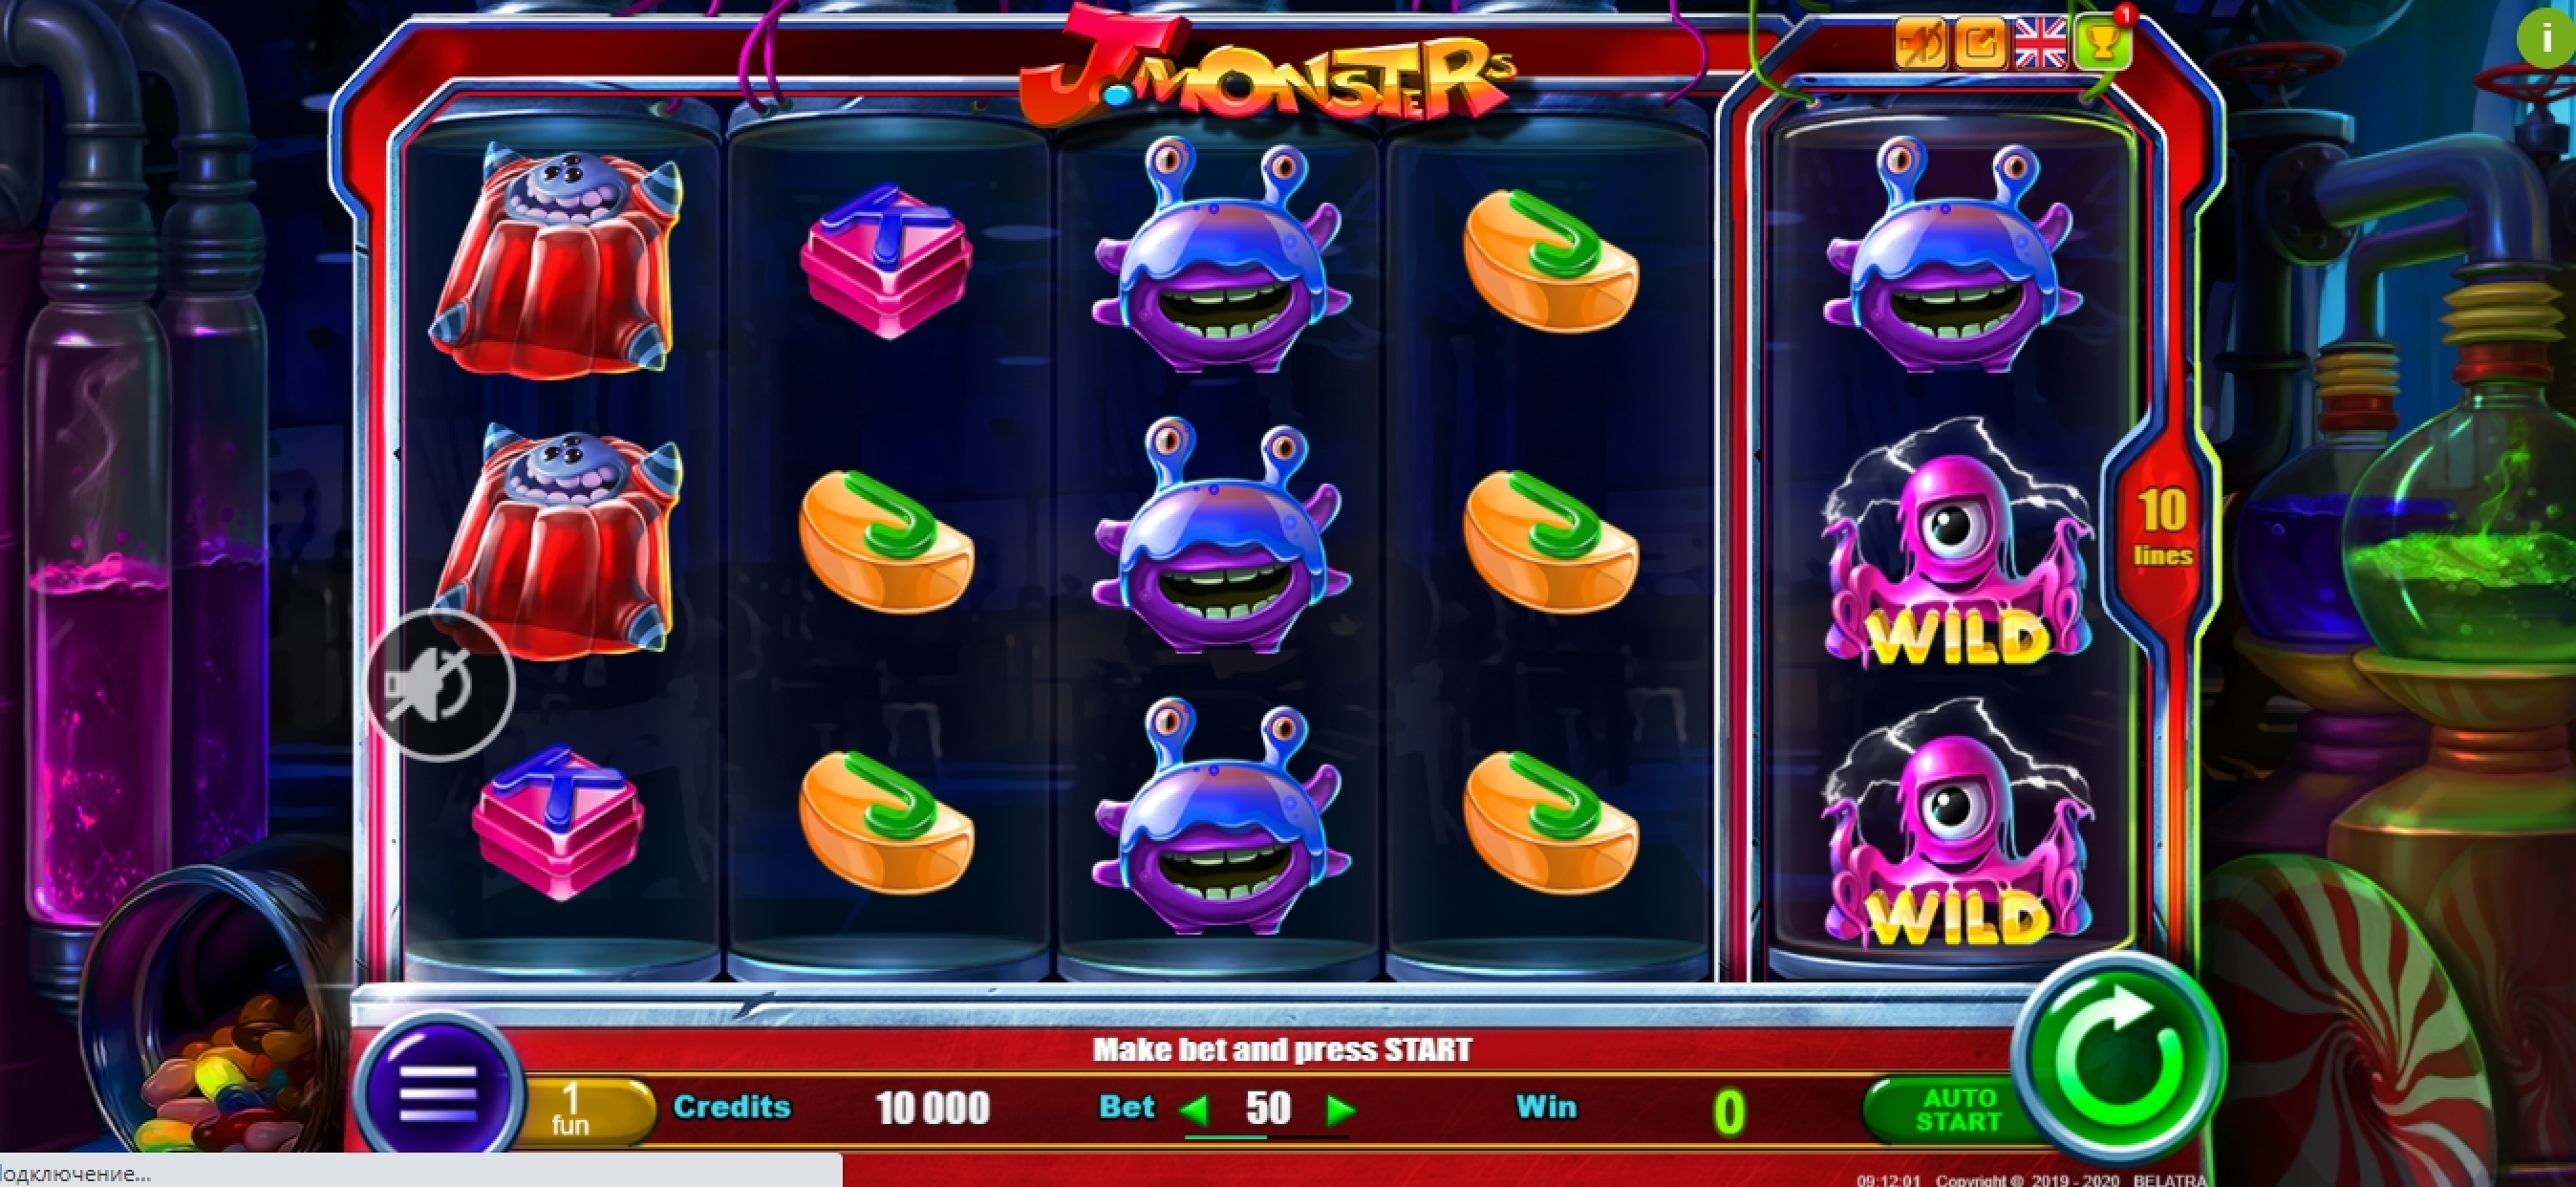 Reels in J. Monsters Slot Game by Belatra Games